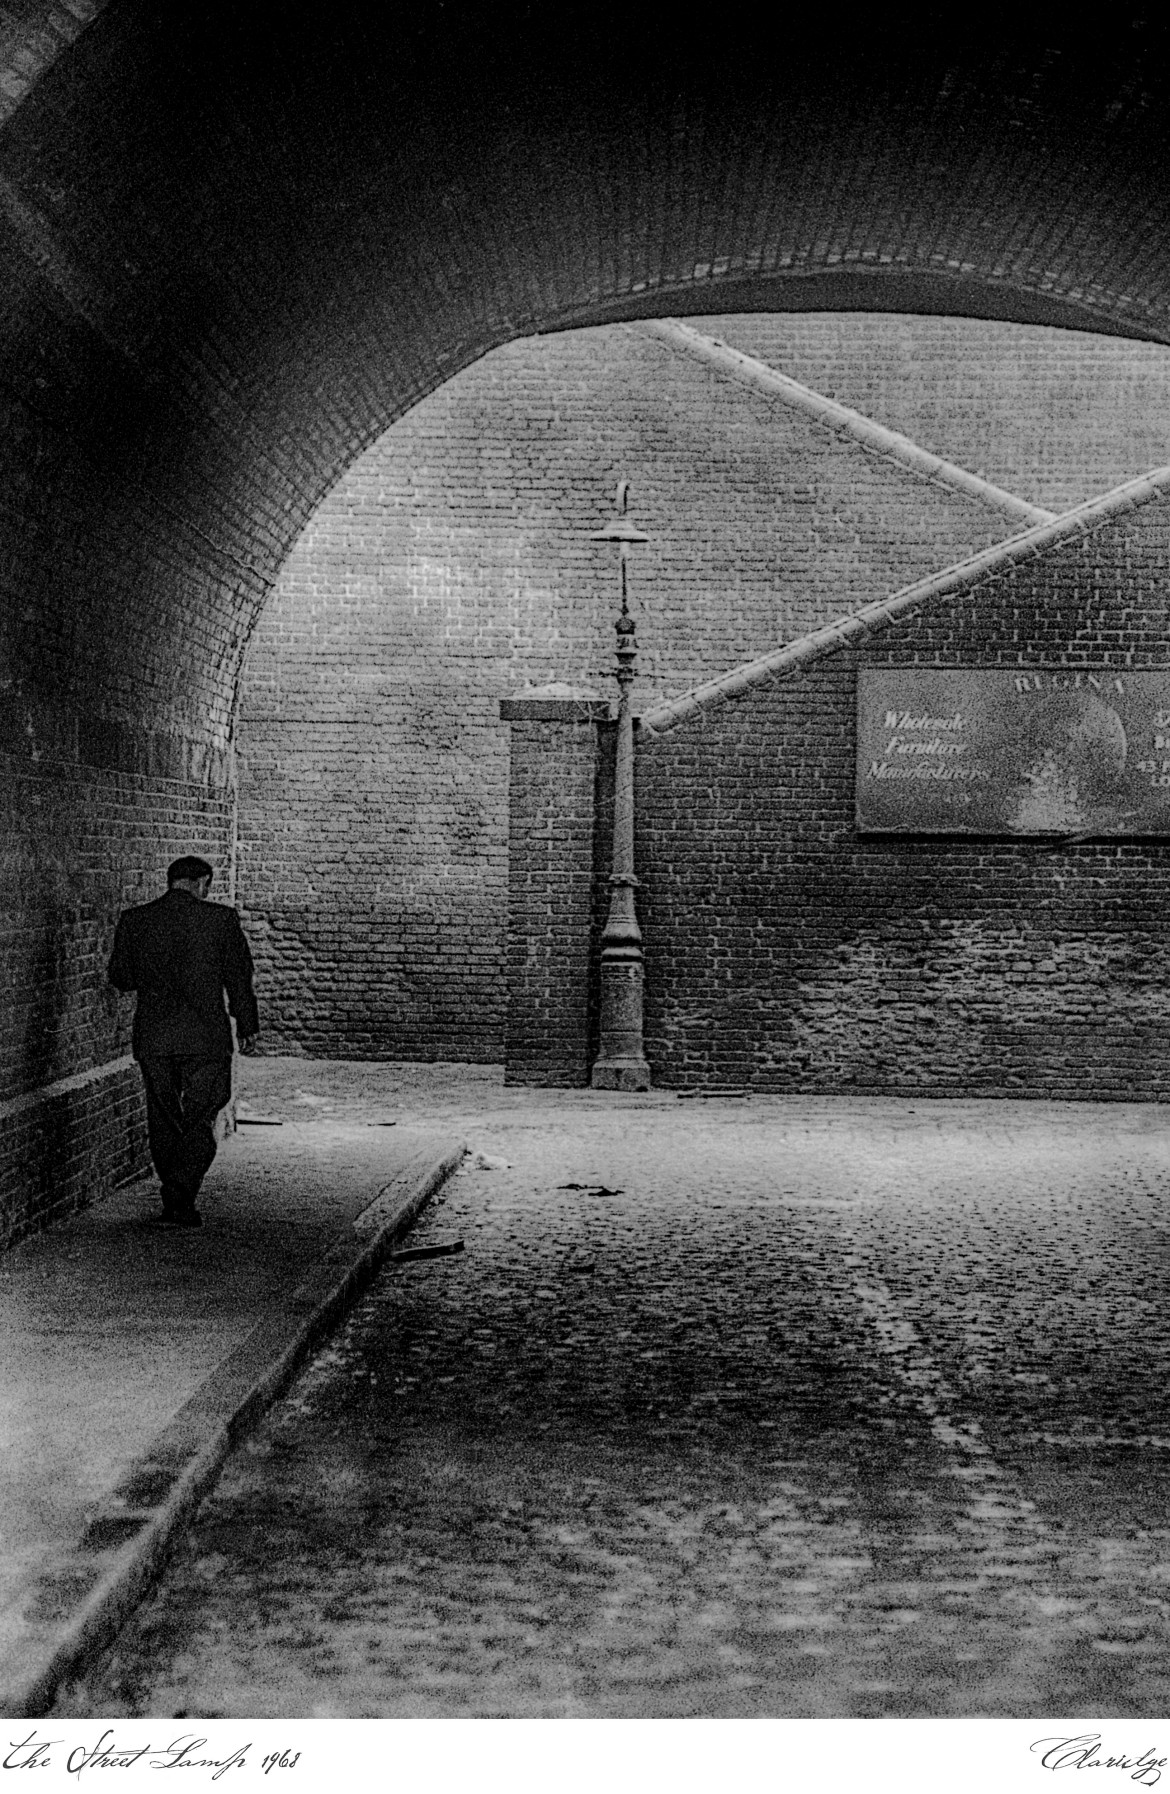 John Claridge, John The Street Lamp (1968)